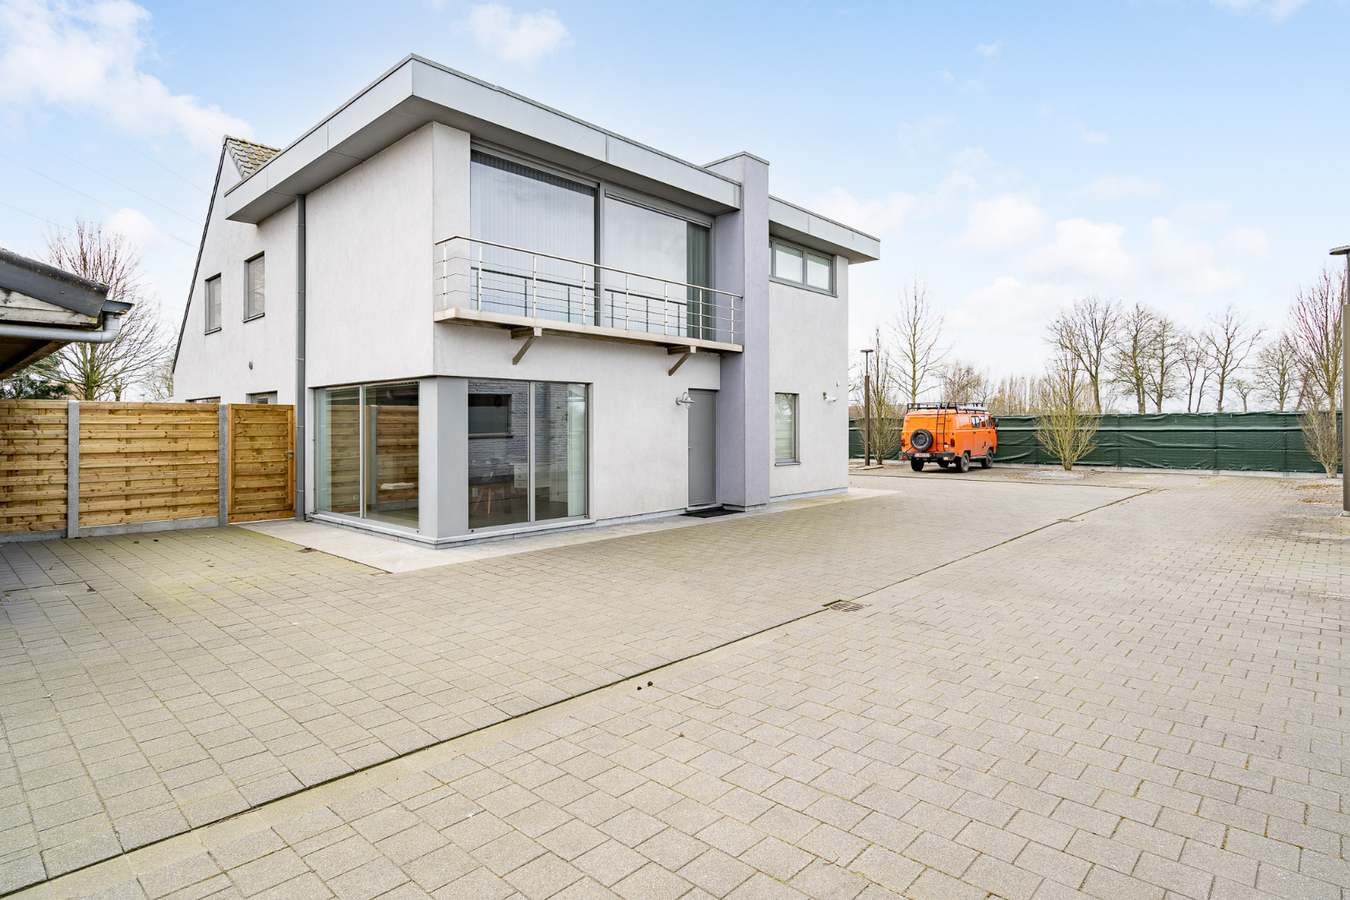 Property sold in Zedelgem